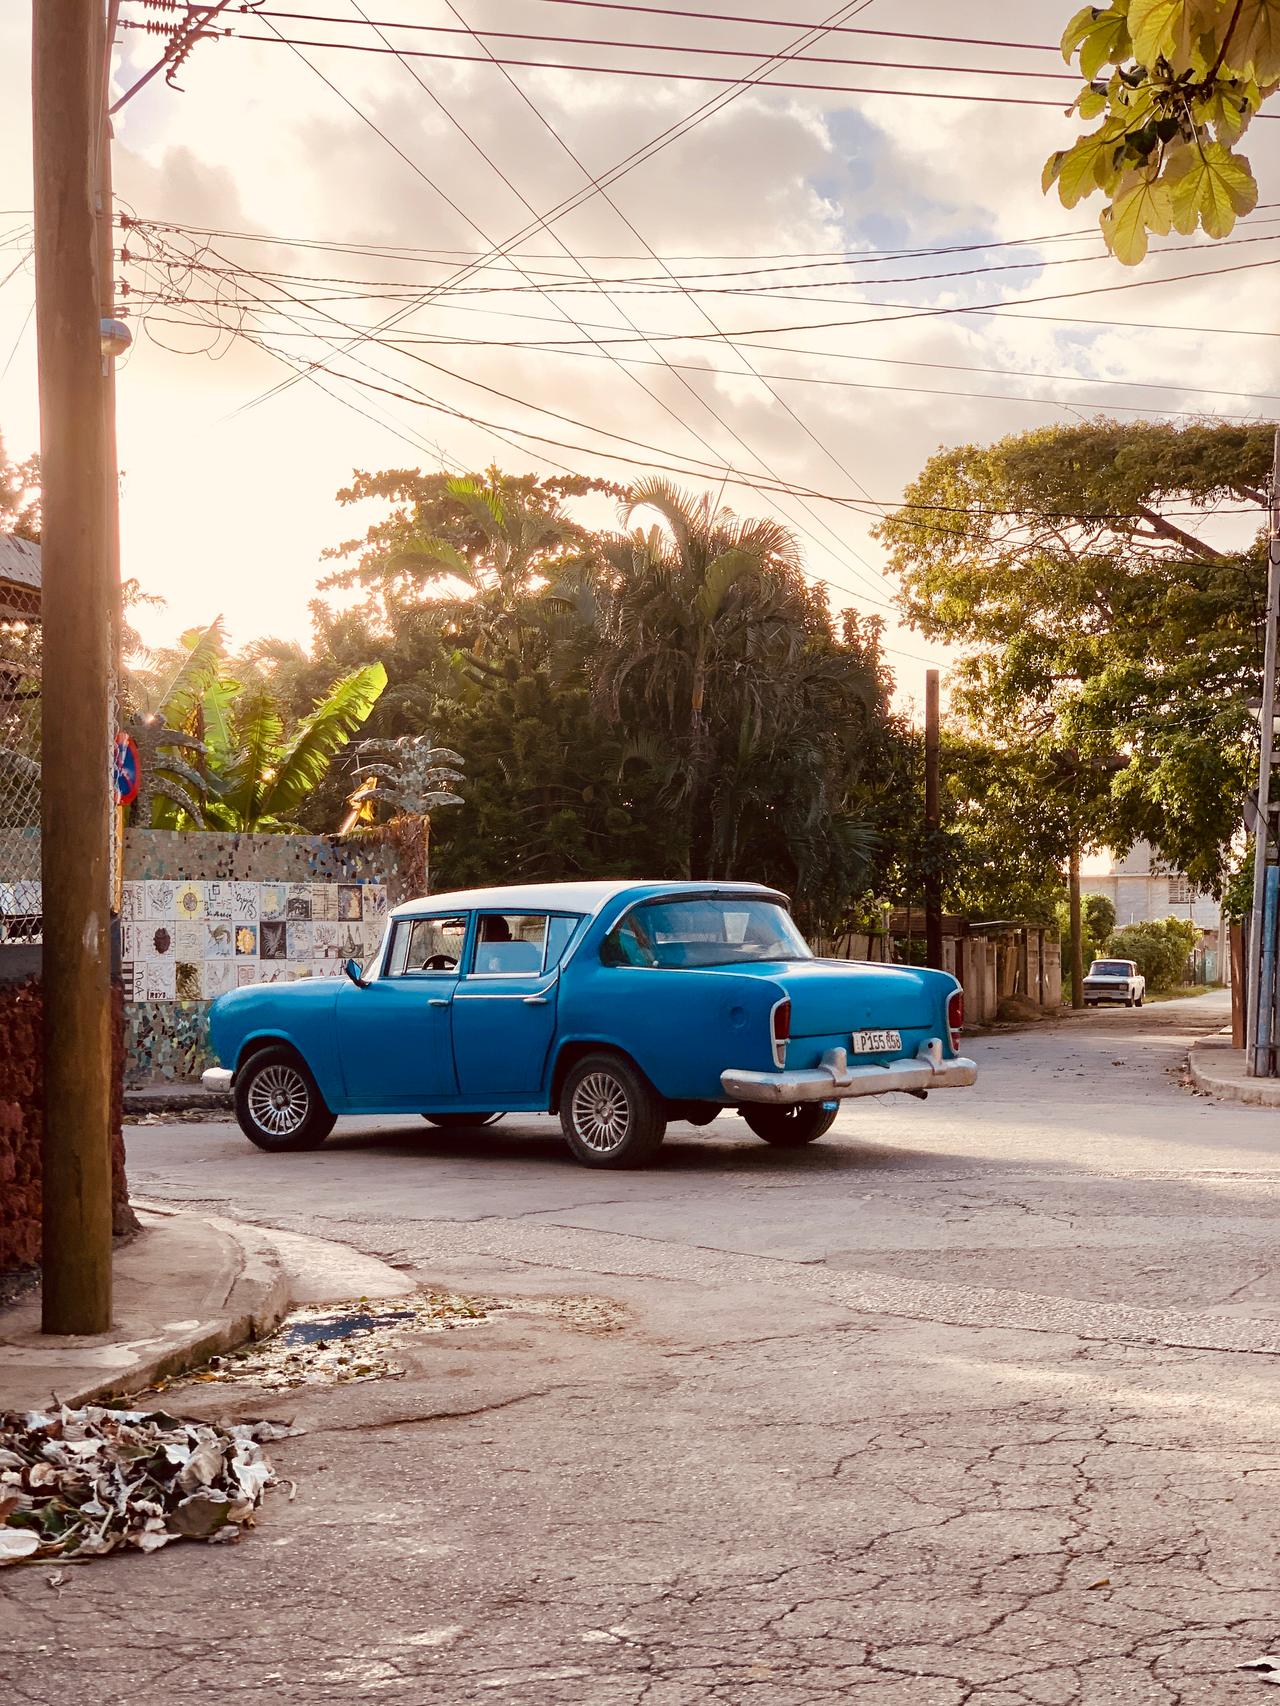 Photo of Classic Car in Cuba